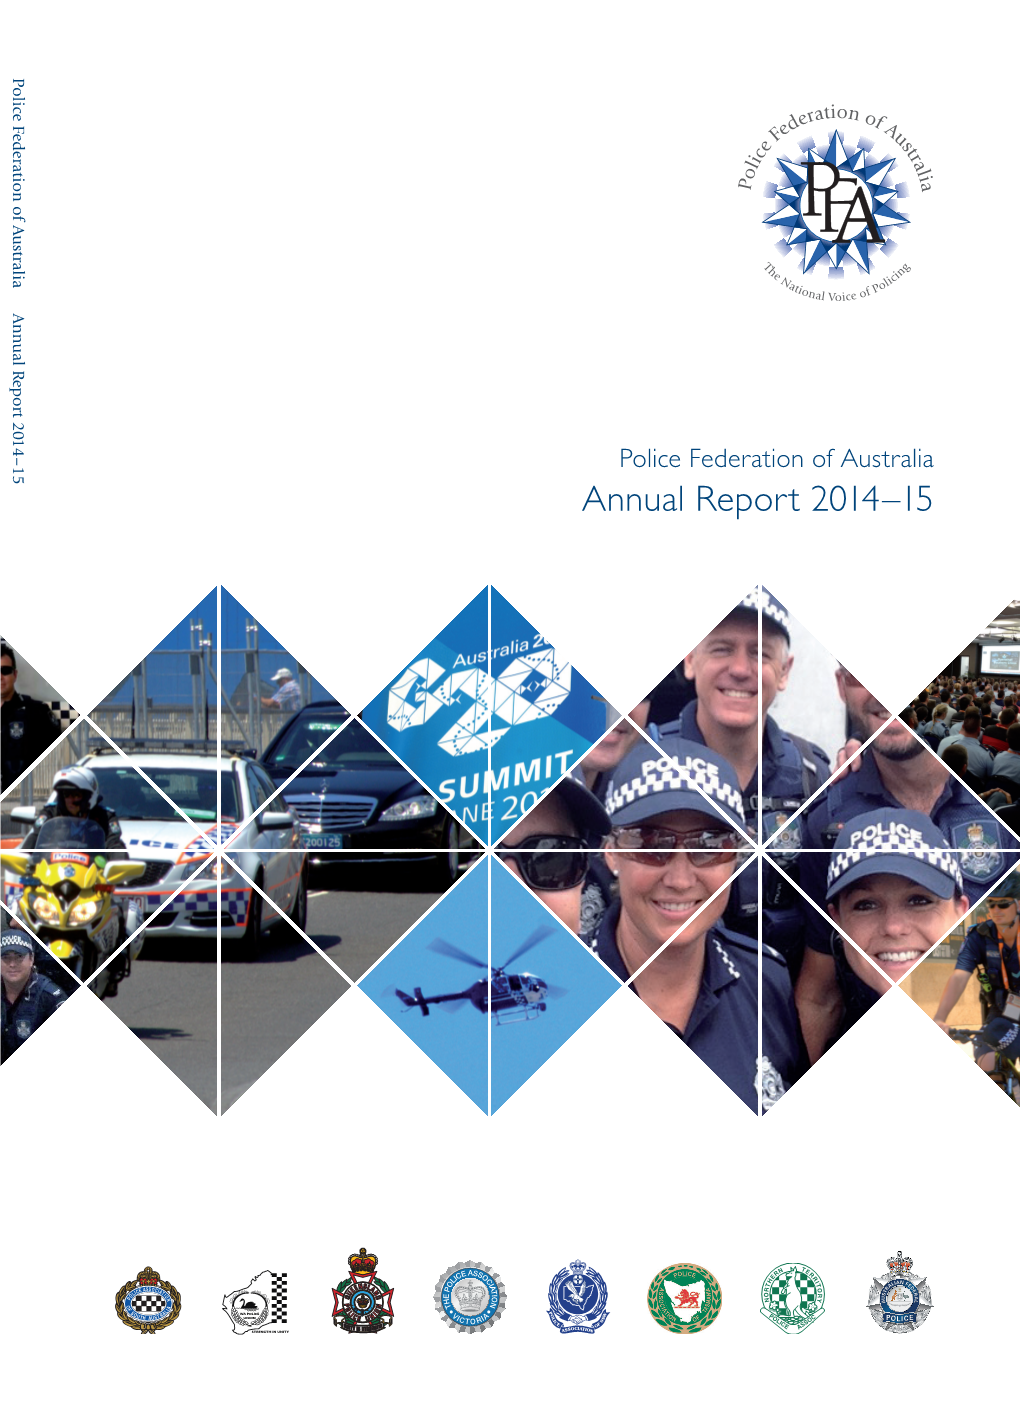 PFA Annual Report 2014-15